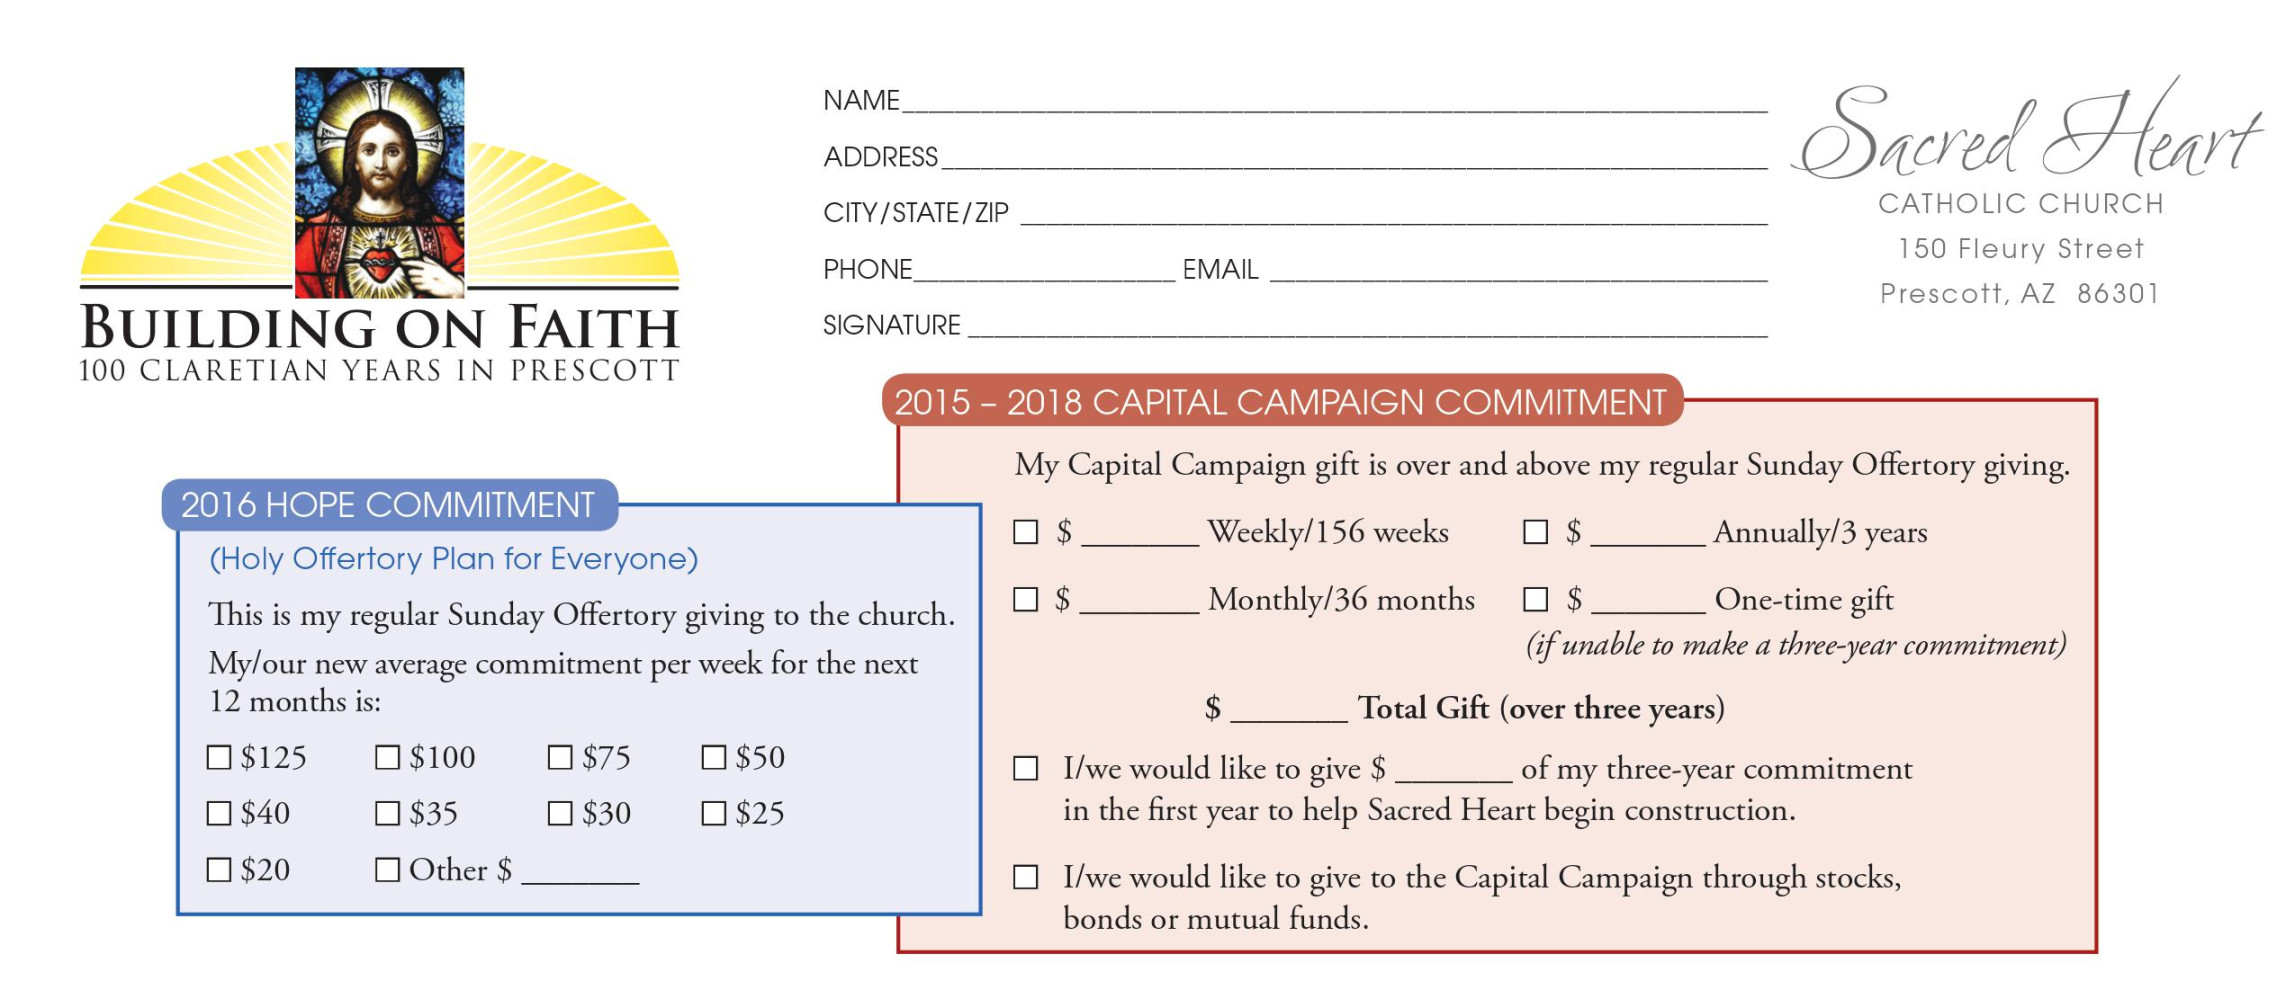 Church Capital Campaign Pledge Card Samples - Church Development